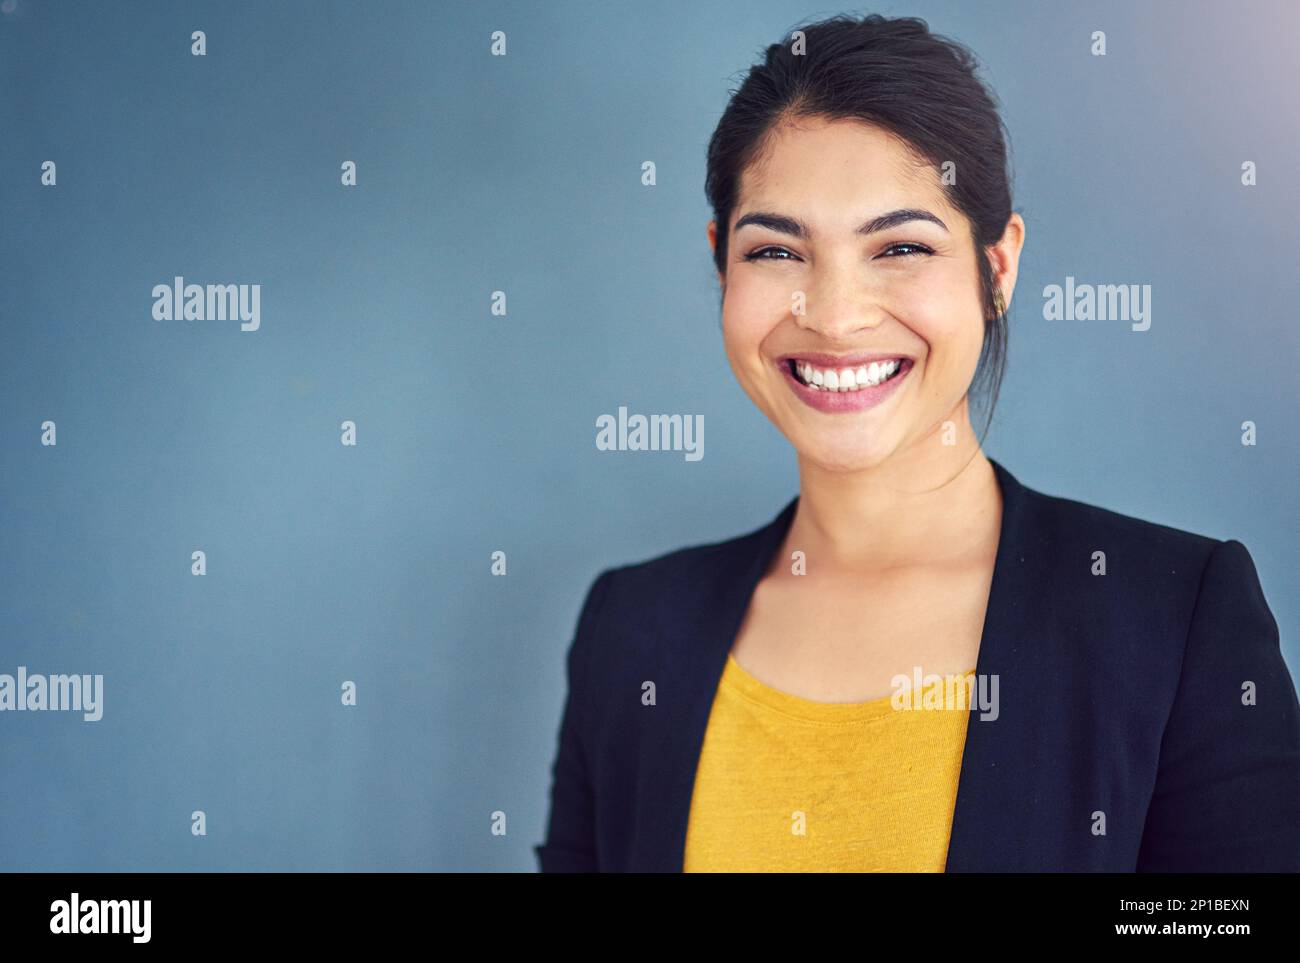 La confiance est la clé du succès. Portrait en studio d'une jeune femme d'affaires attirante debout sur fond bleu. Banque D'Images